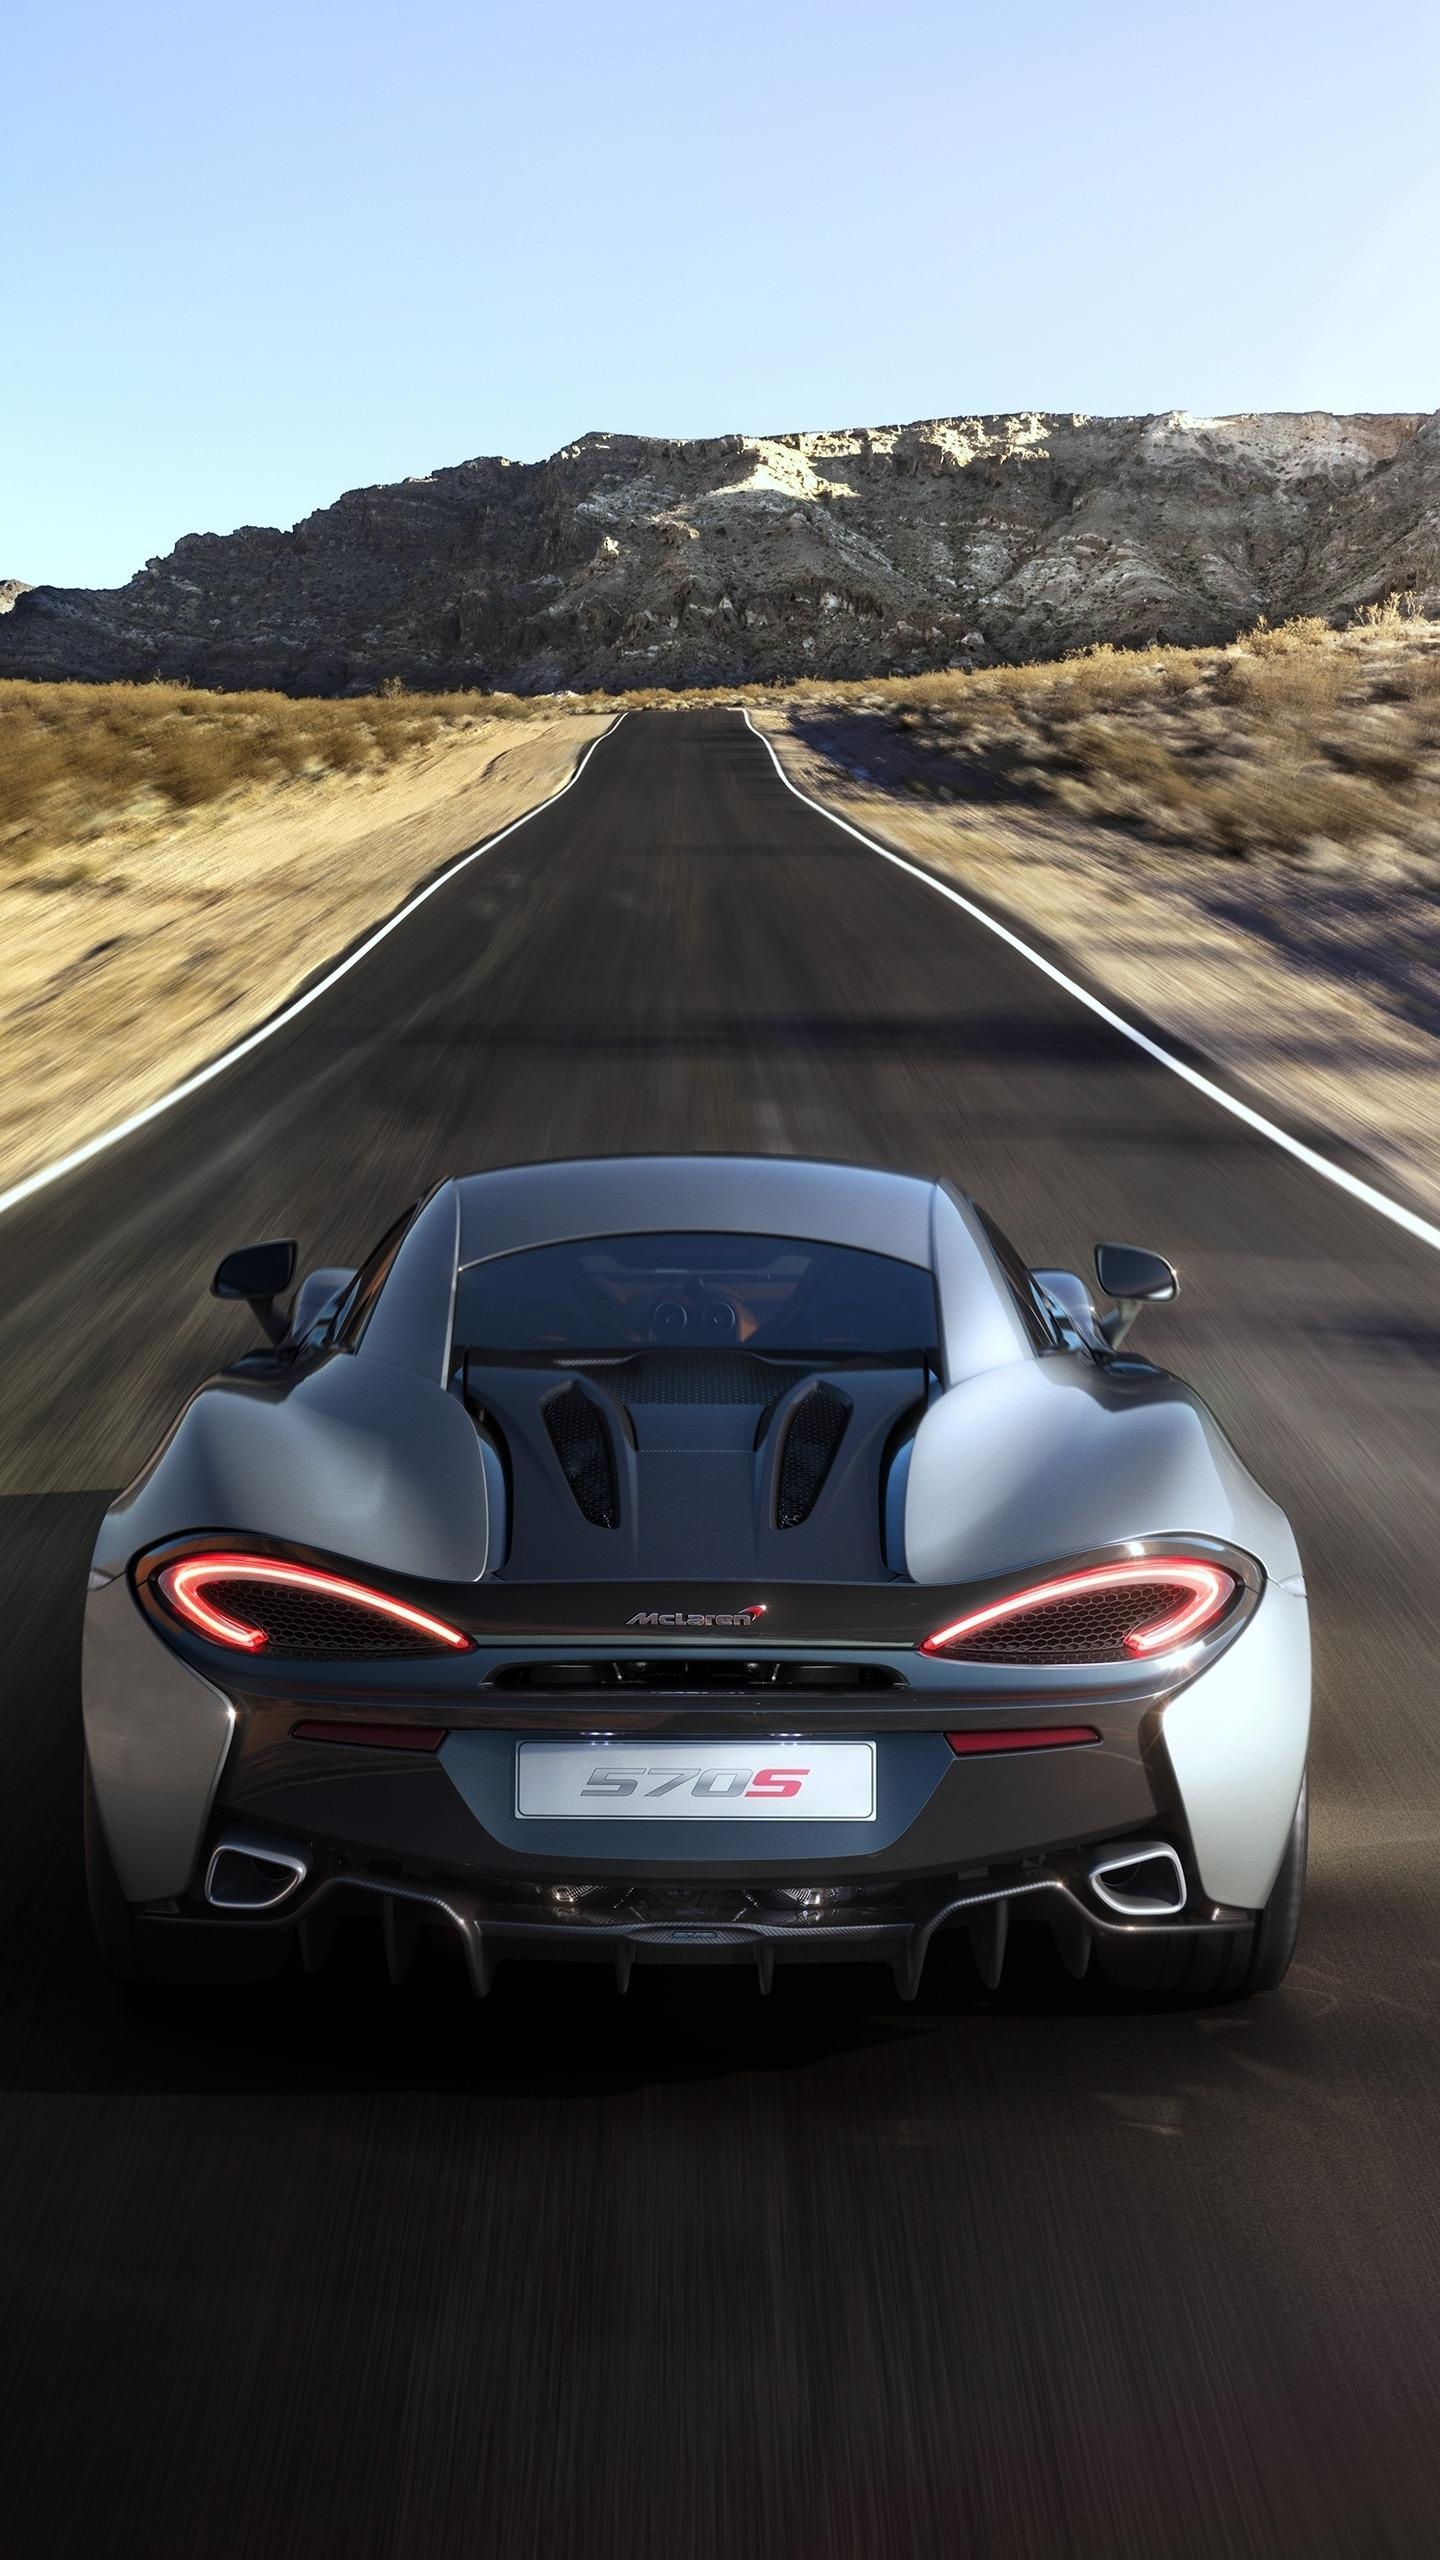 McLaren 570S (Auto), Stunning HD wallpapers, High-performance supercar, McLaren excellence, 1440x2560 HD Phone